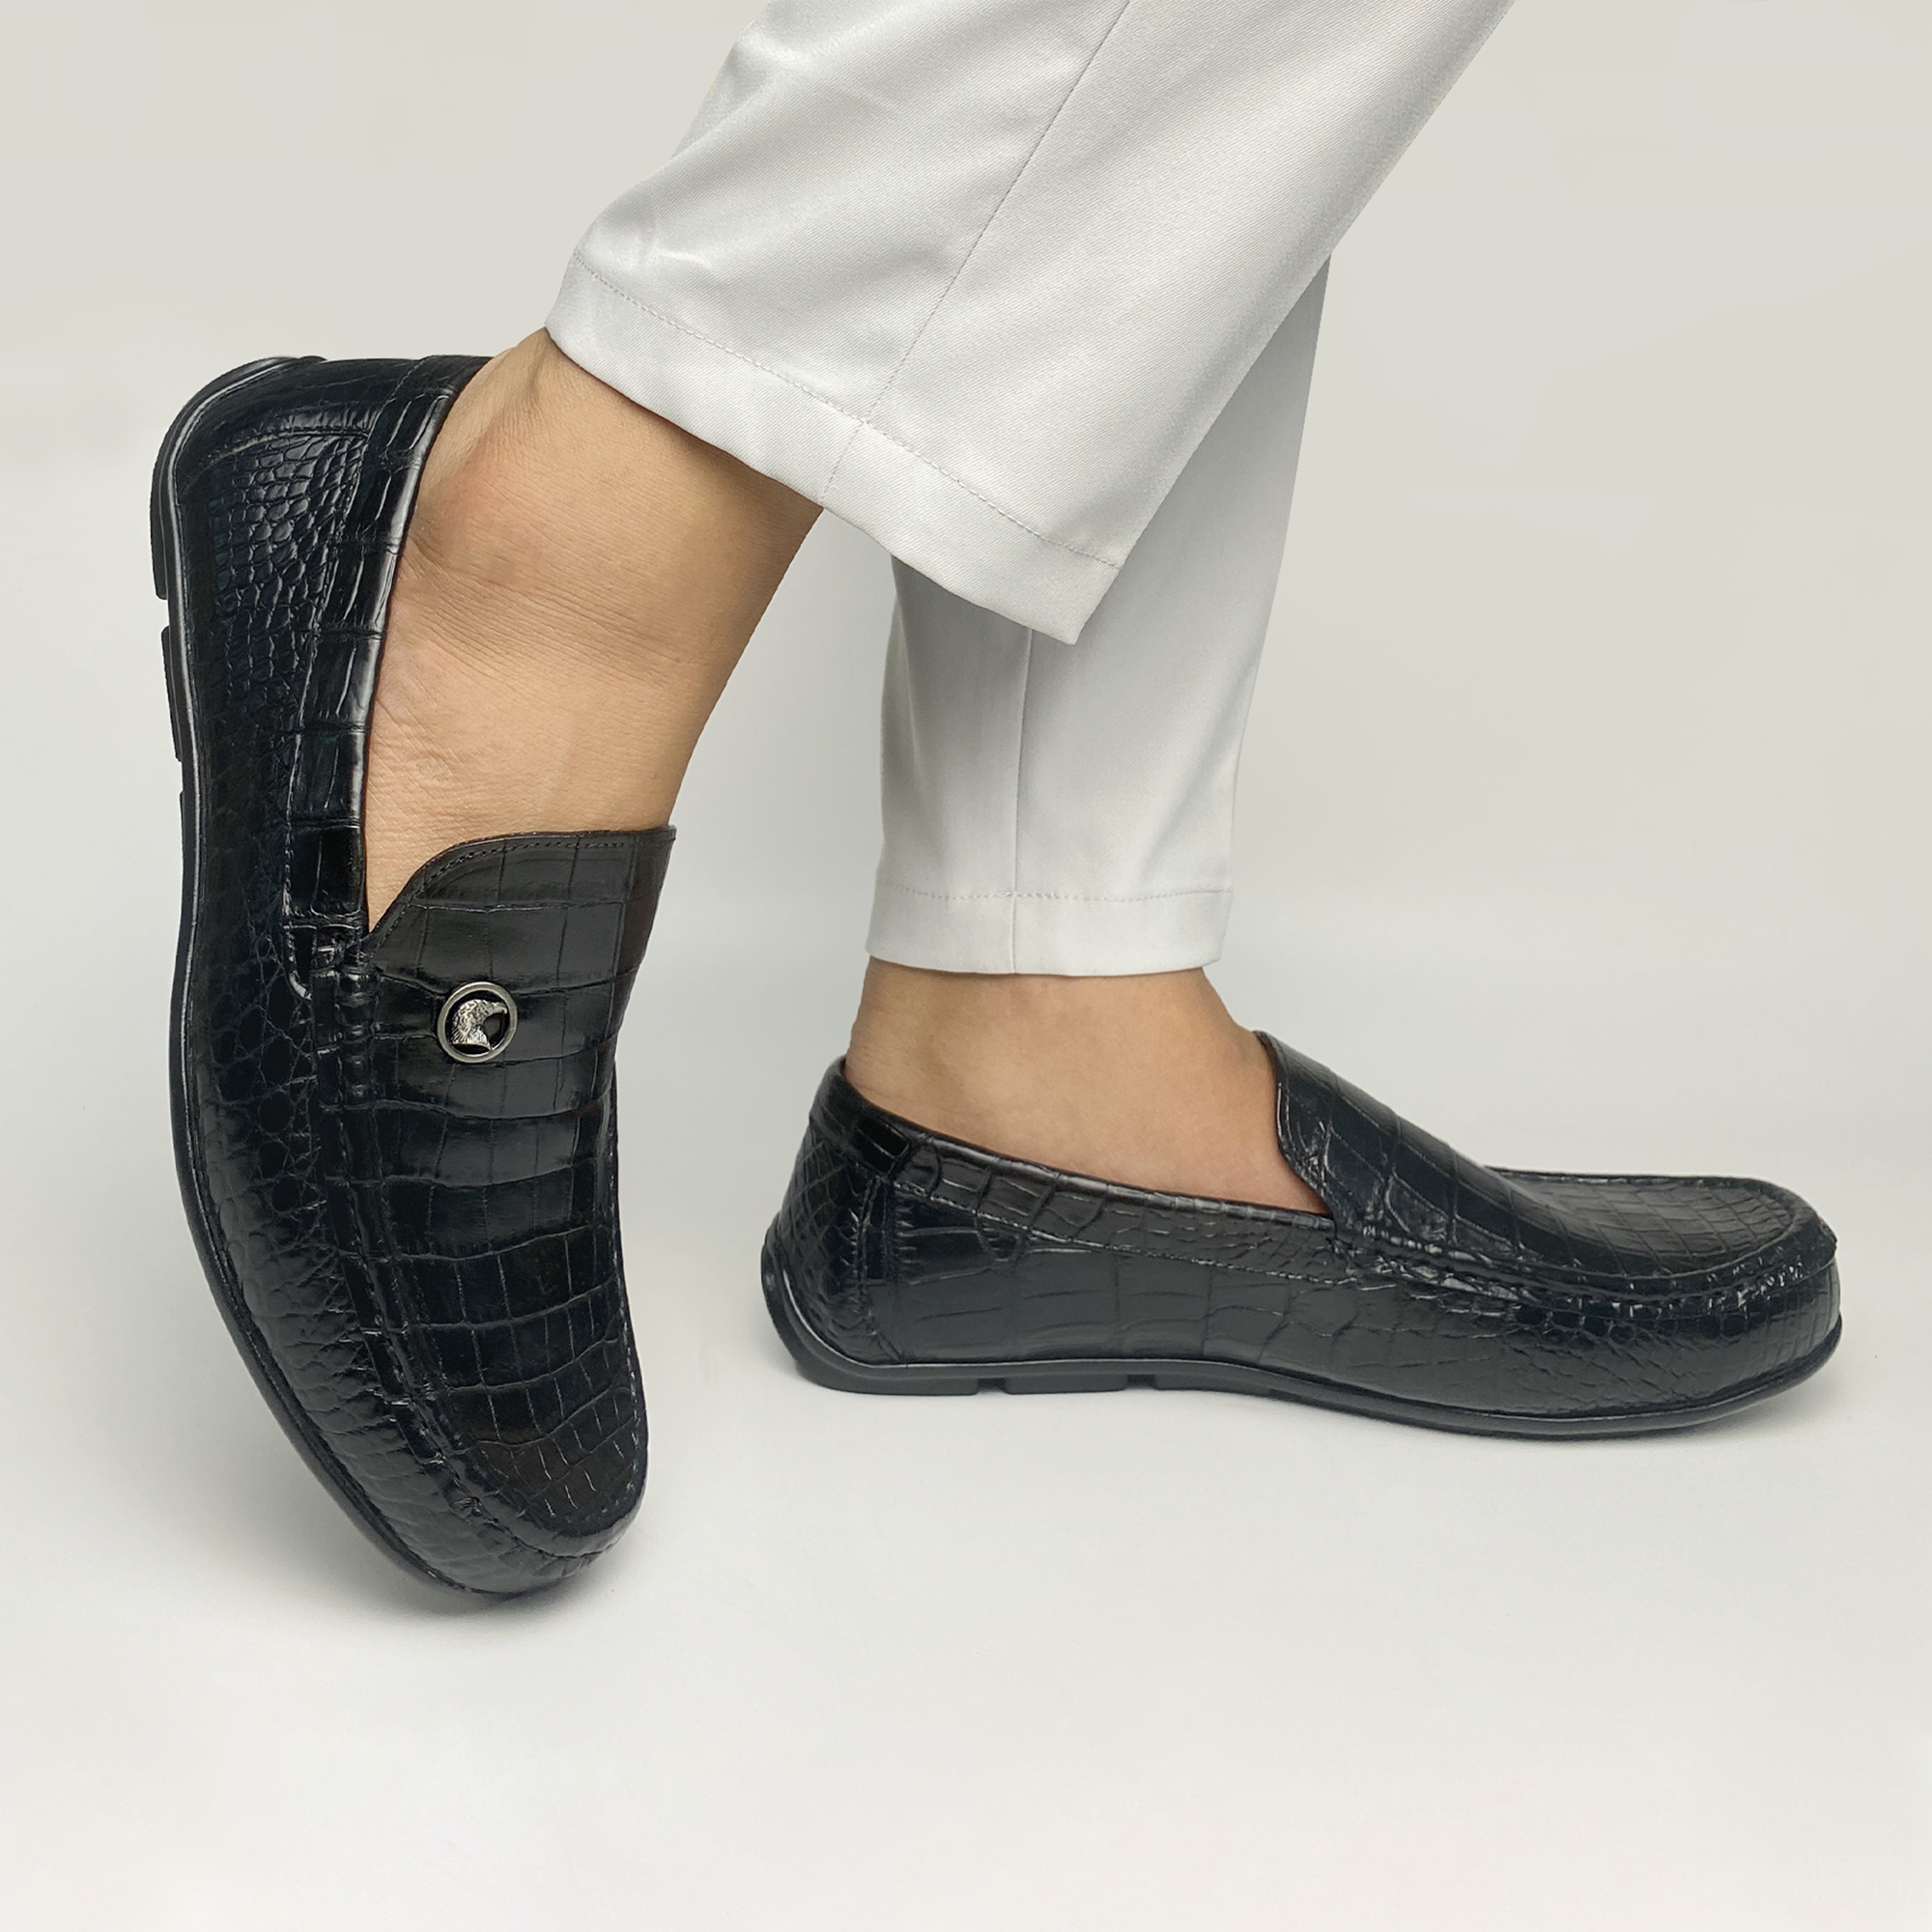 Black Alligator Leather Moccasin Loafer | Crocodile Belly Skin Moccasin Loafer | SH91L42